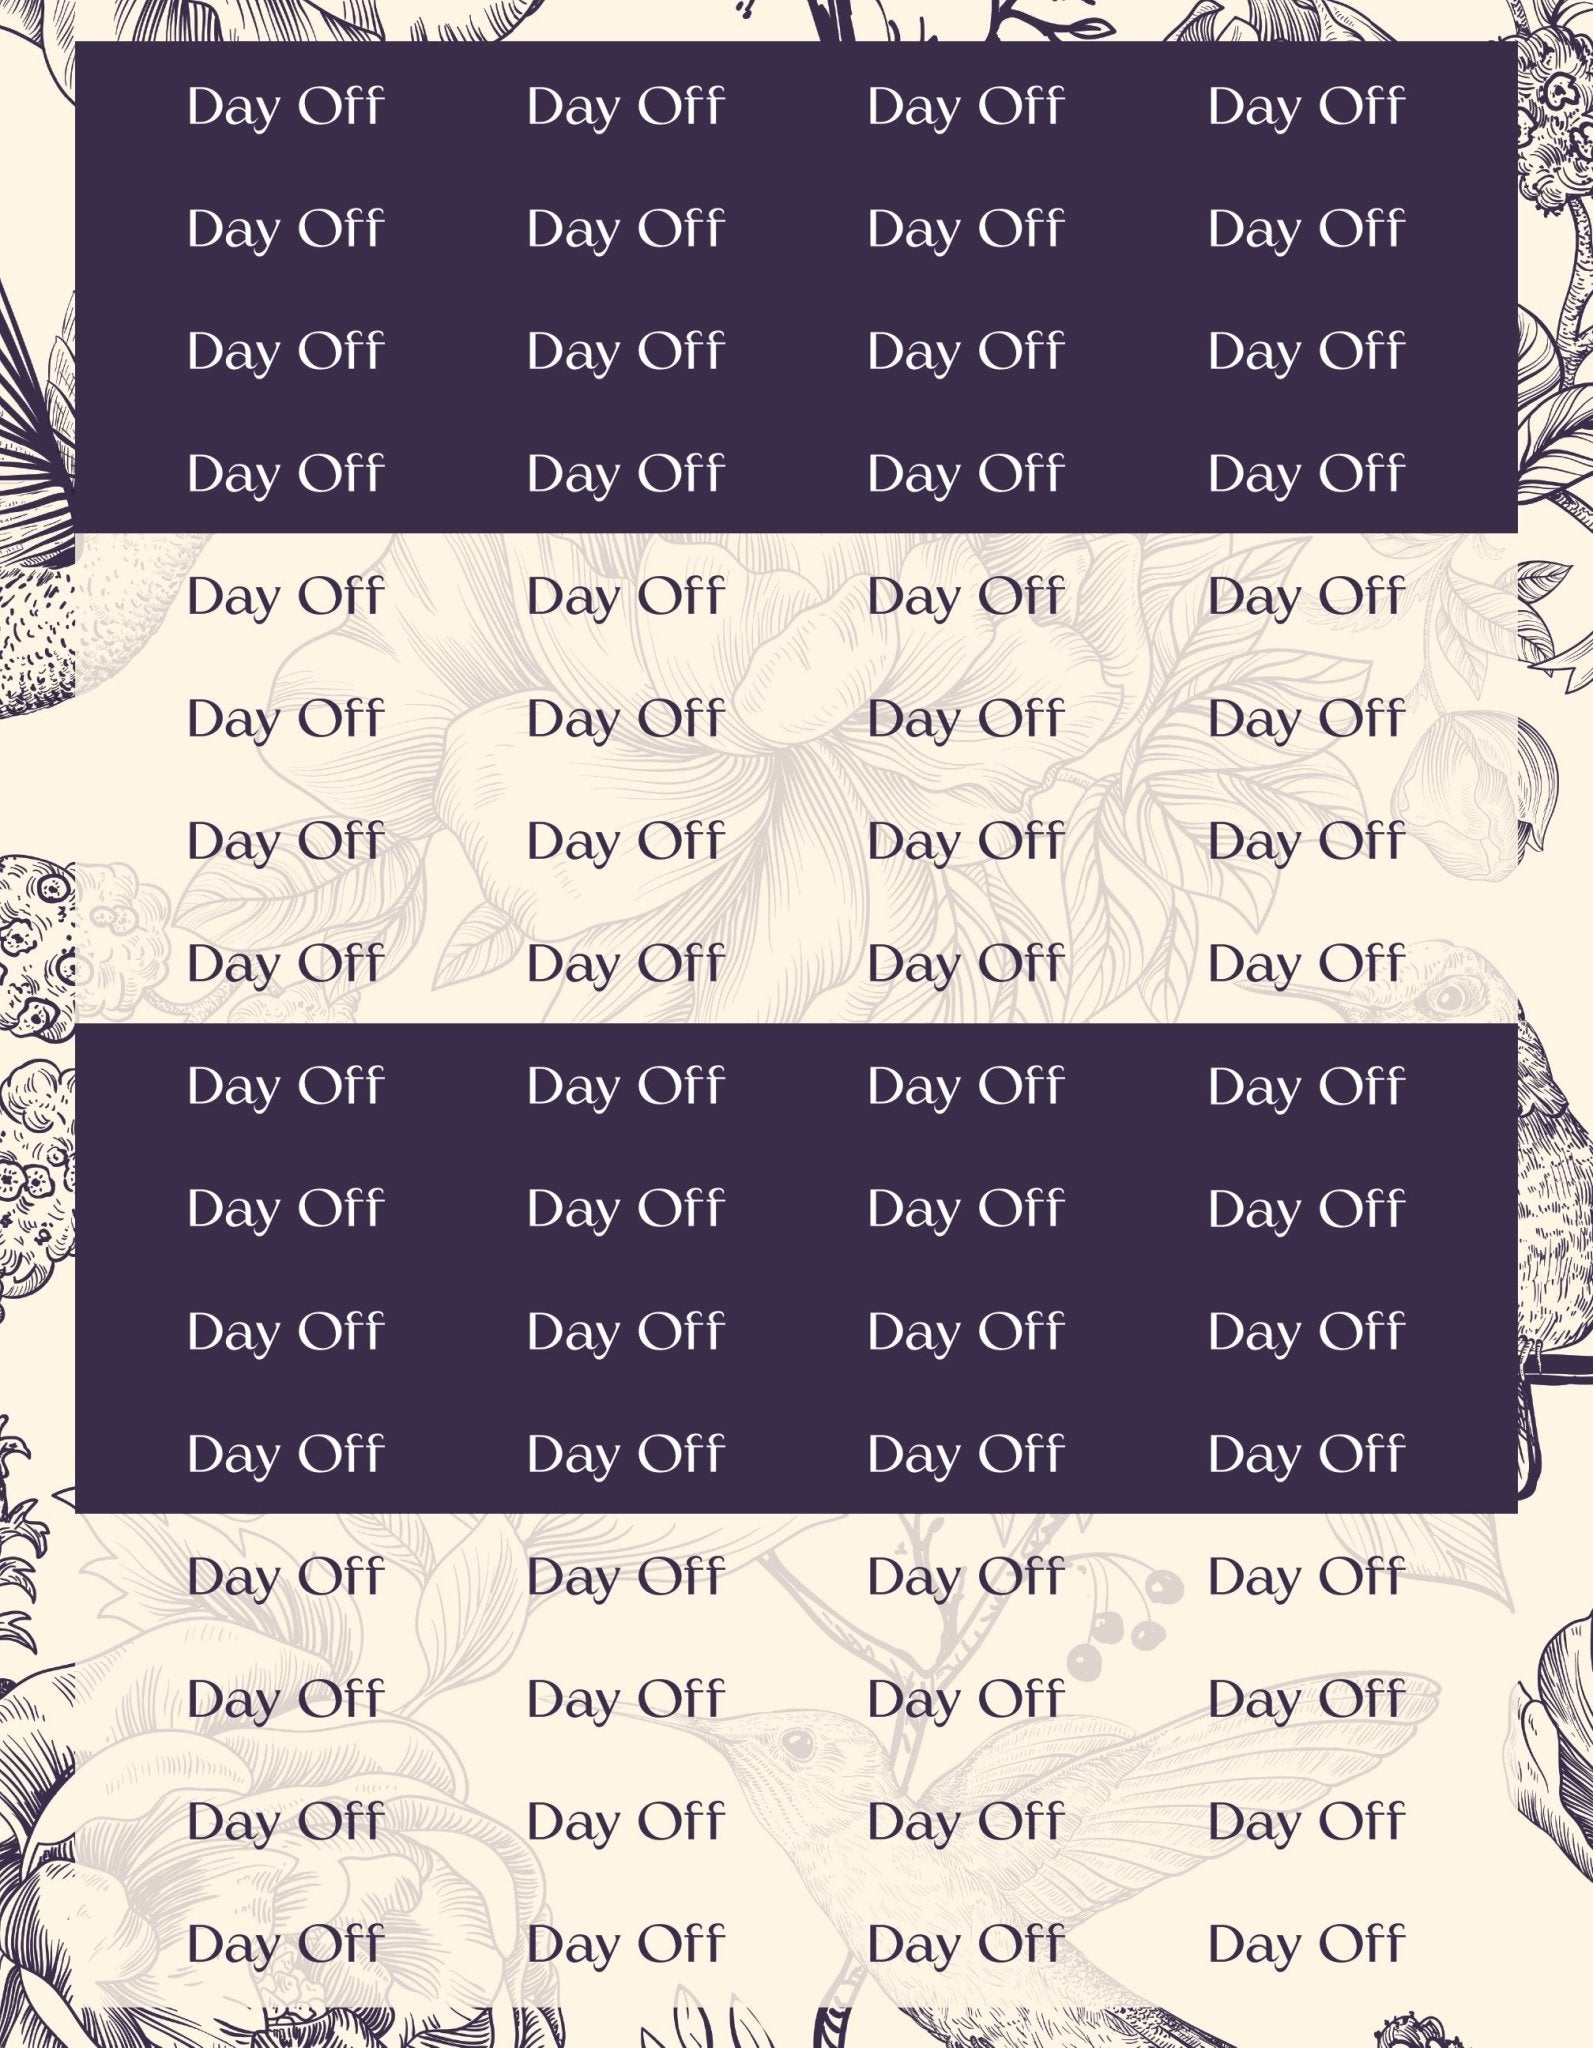 Day Off Sticker Sheets - 9 Designs/Colors - Colibri Paper Co